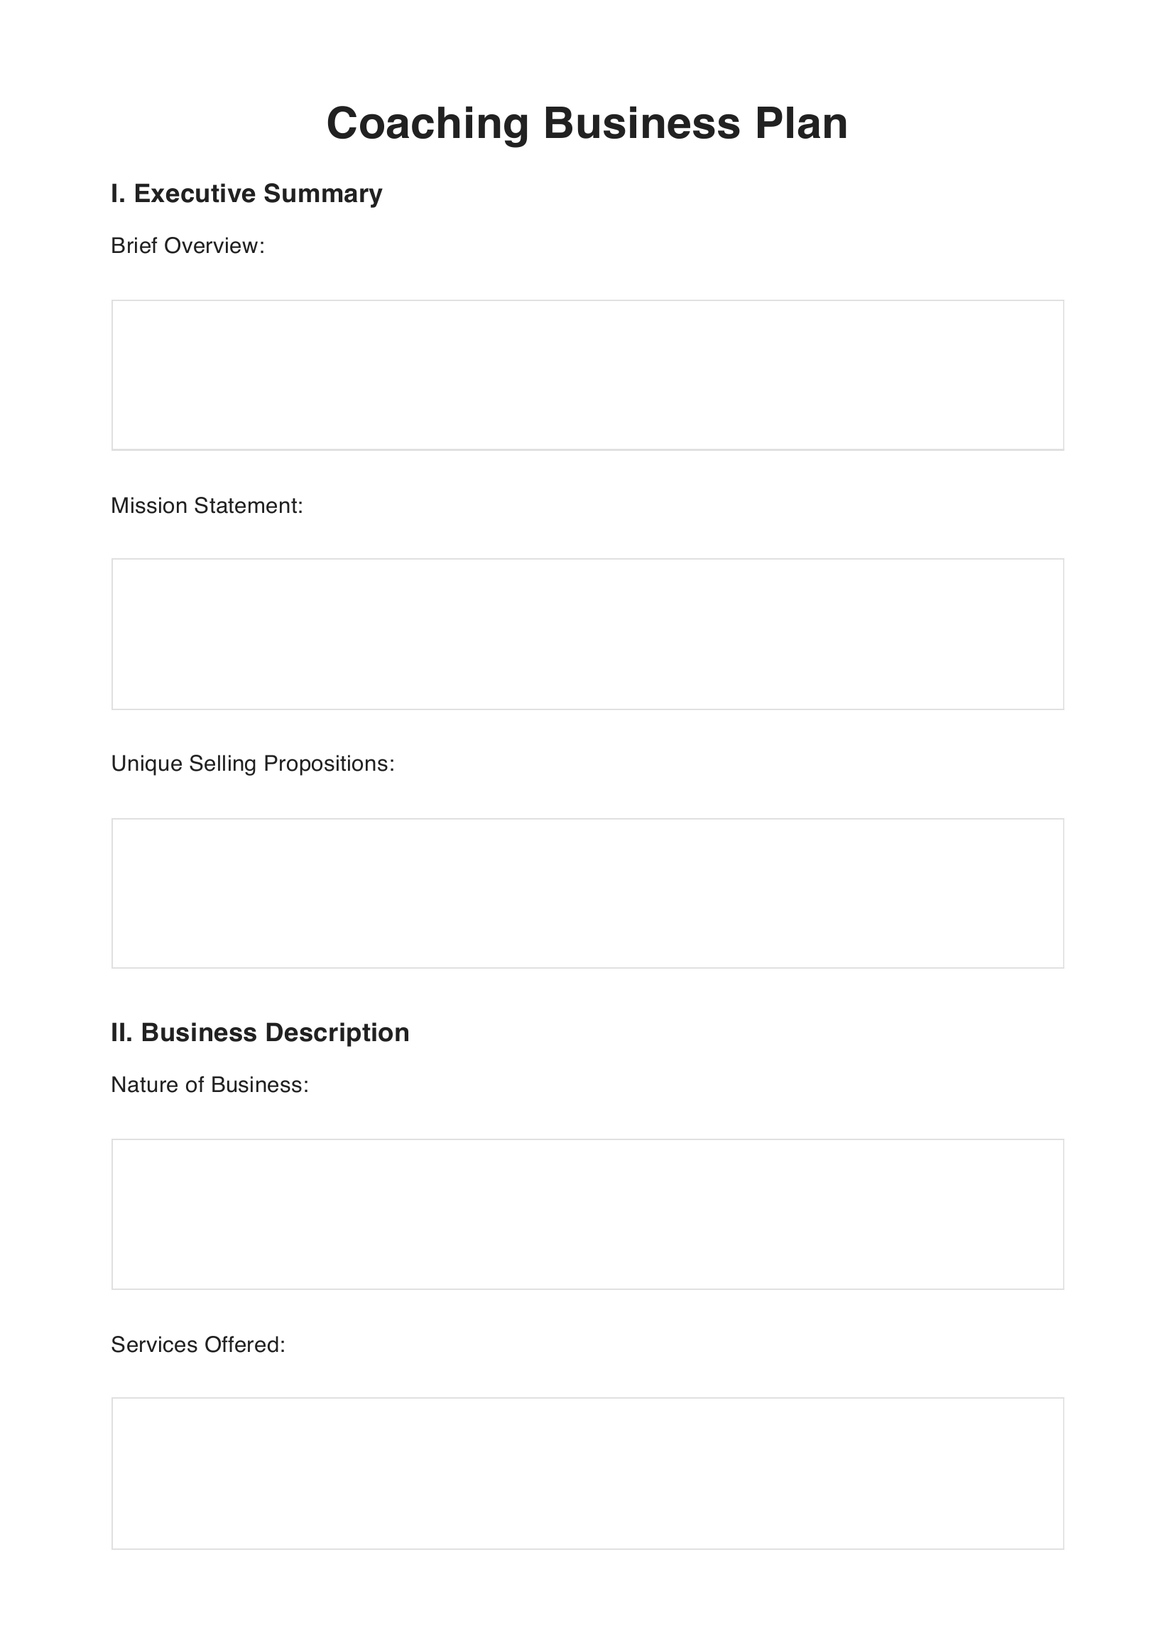 Coaching Business Plan PDF Example